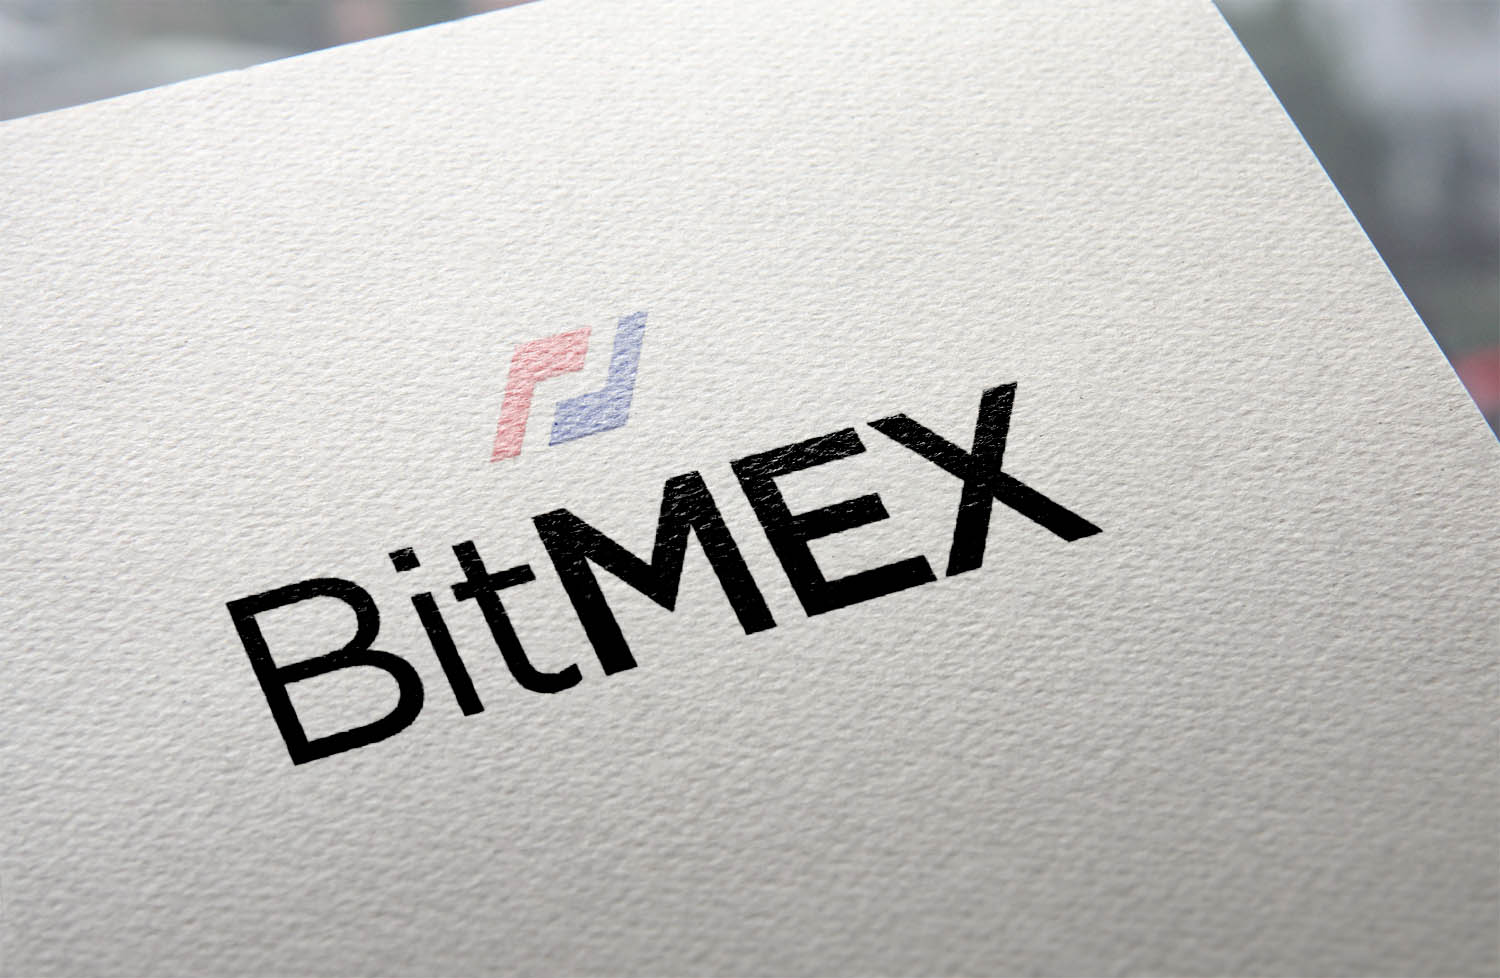  Bitmex  30% 